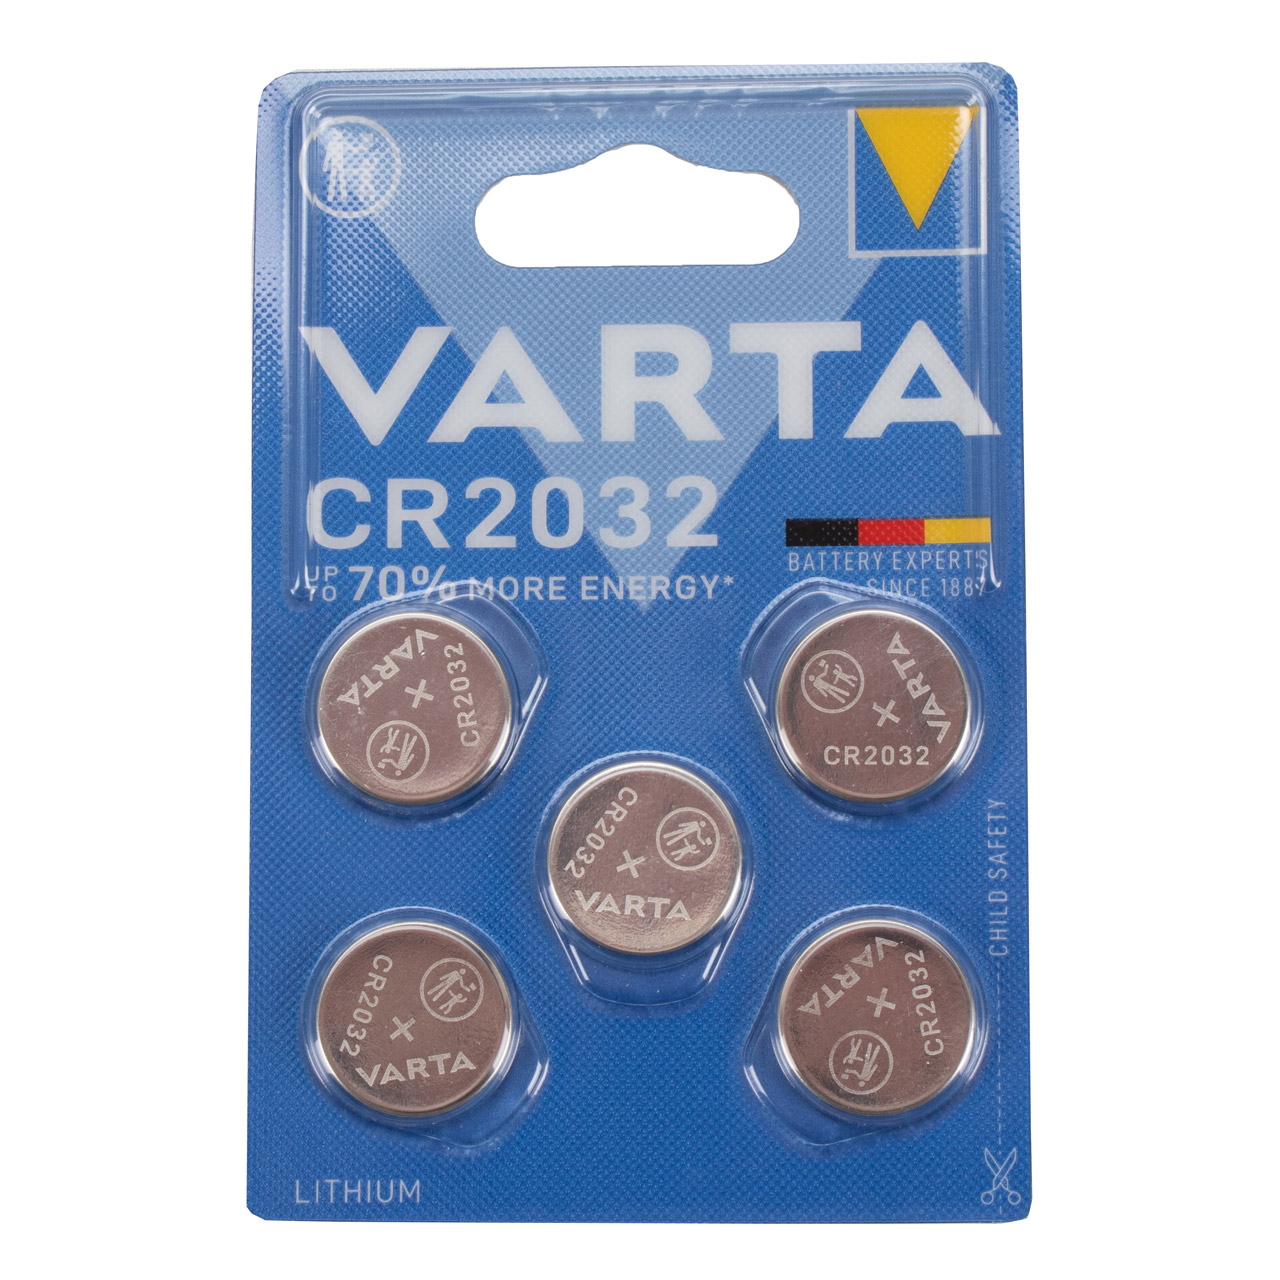 5x VARTA Lithium 3V CR2032 Knopfzelle Knopfbatterie Batterie (MHD 07.2031)